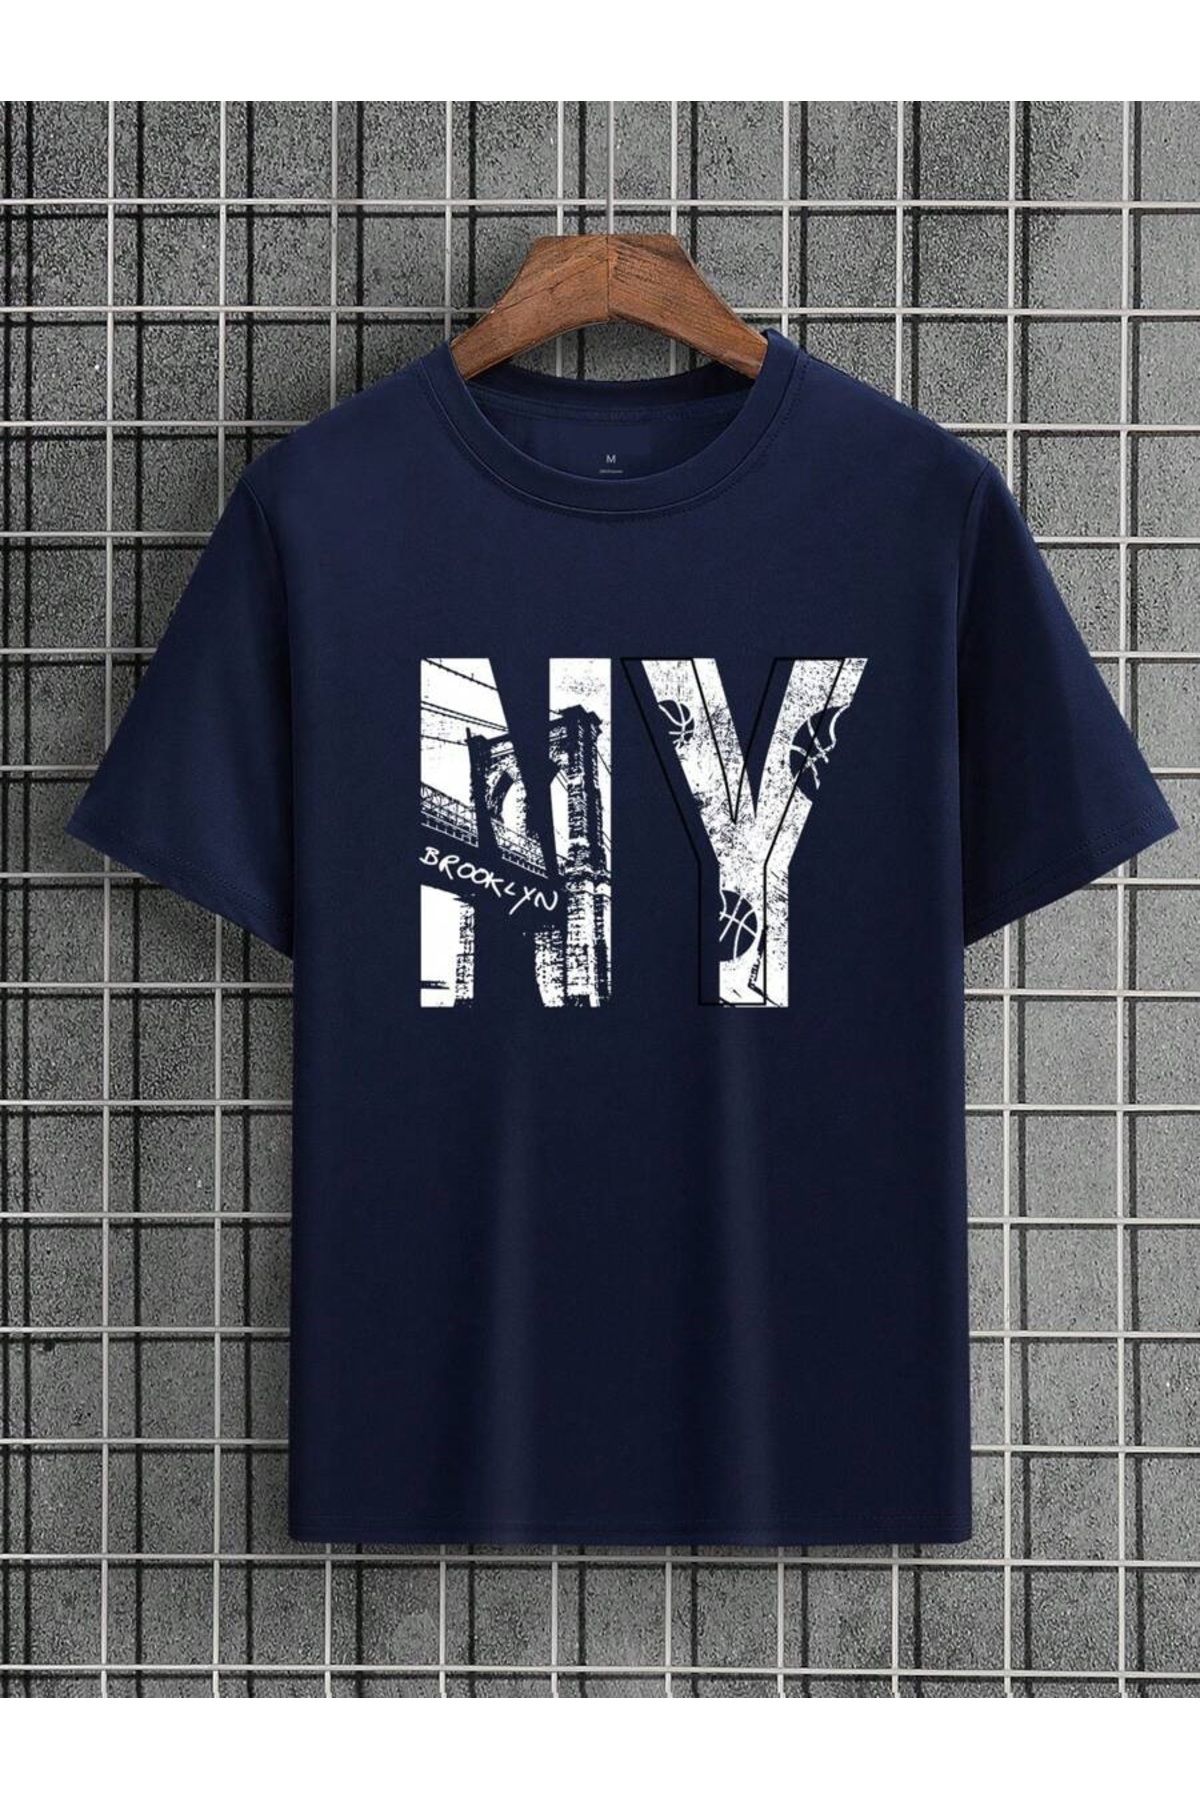 MOONBULL Unisex NY Brooklyn Baskılı Oversize T-shirt